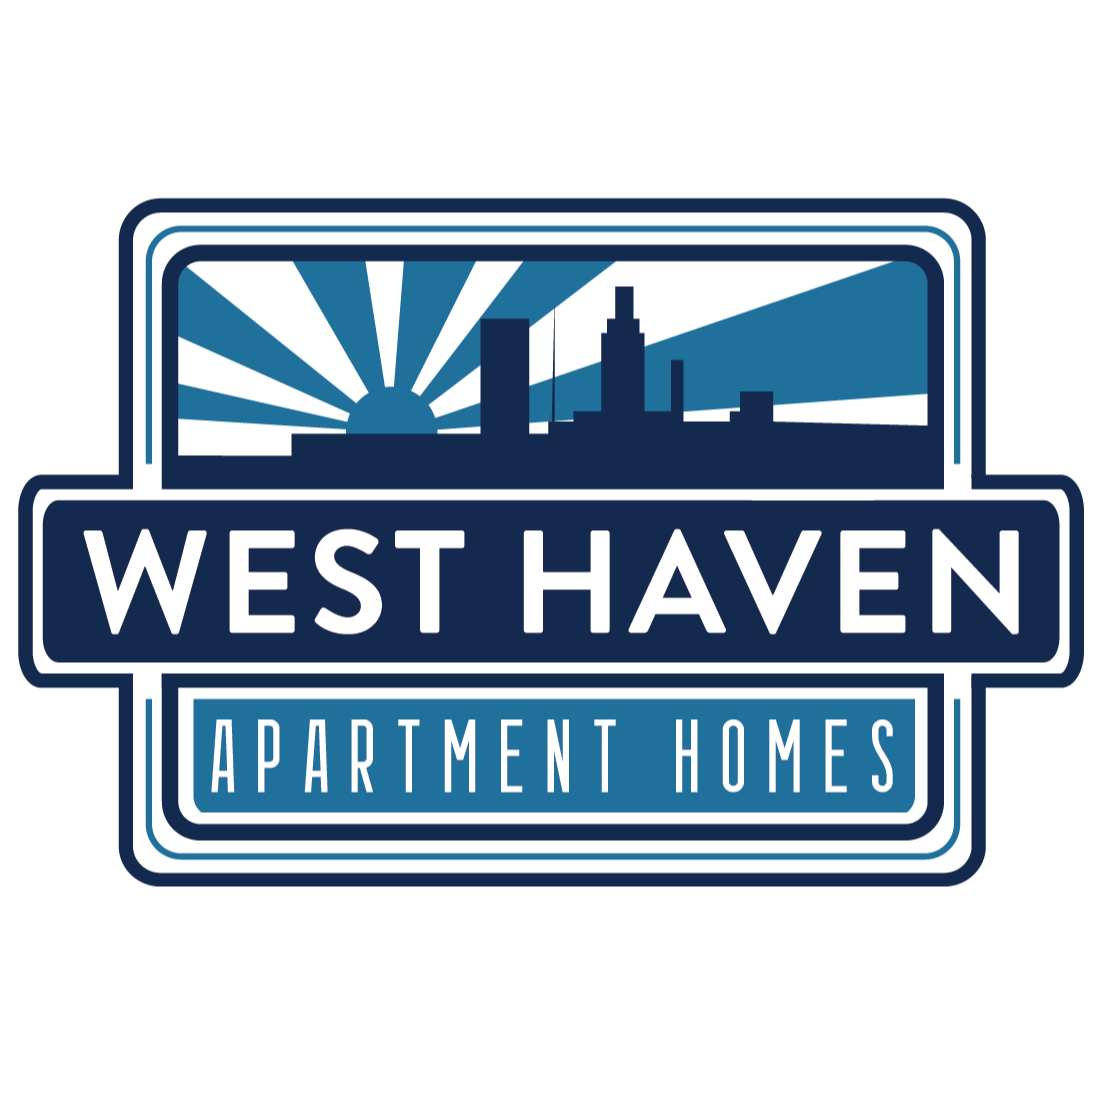 West Haven Apartment Homes - Omaha, NE 68154 - (402)347-2366 | ShowMeLocal.com